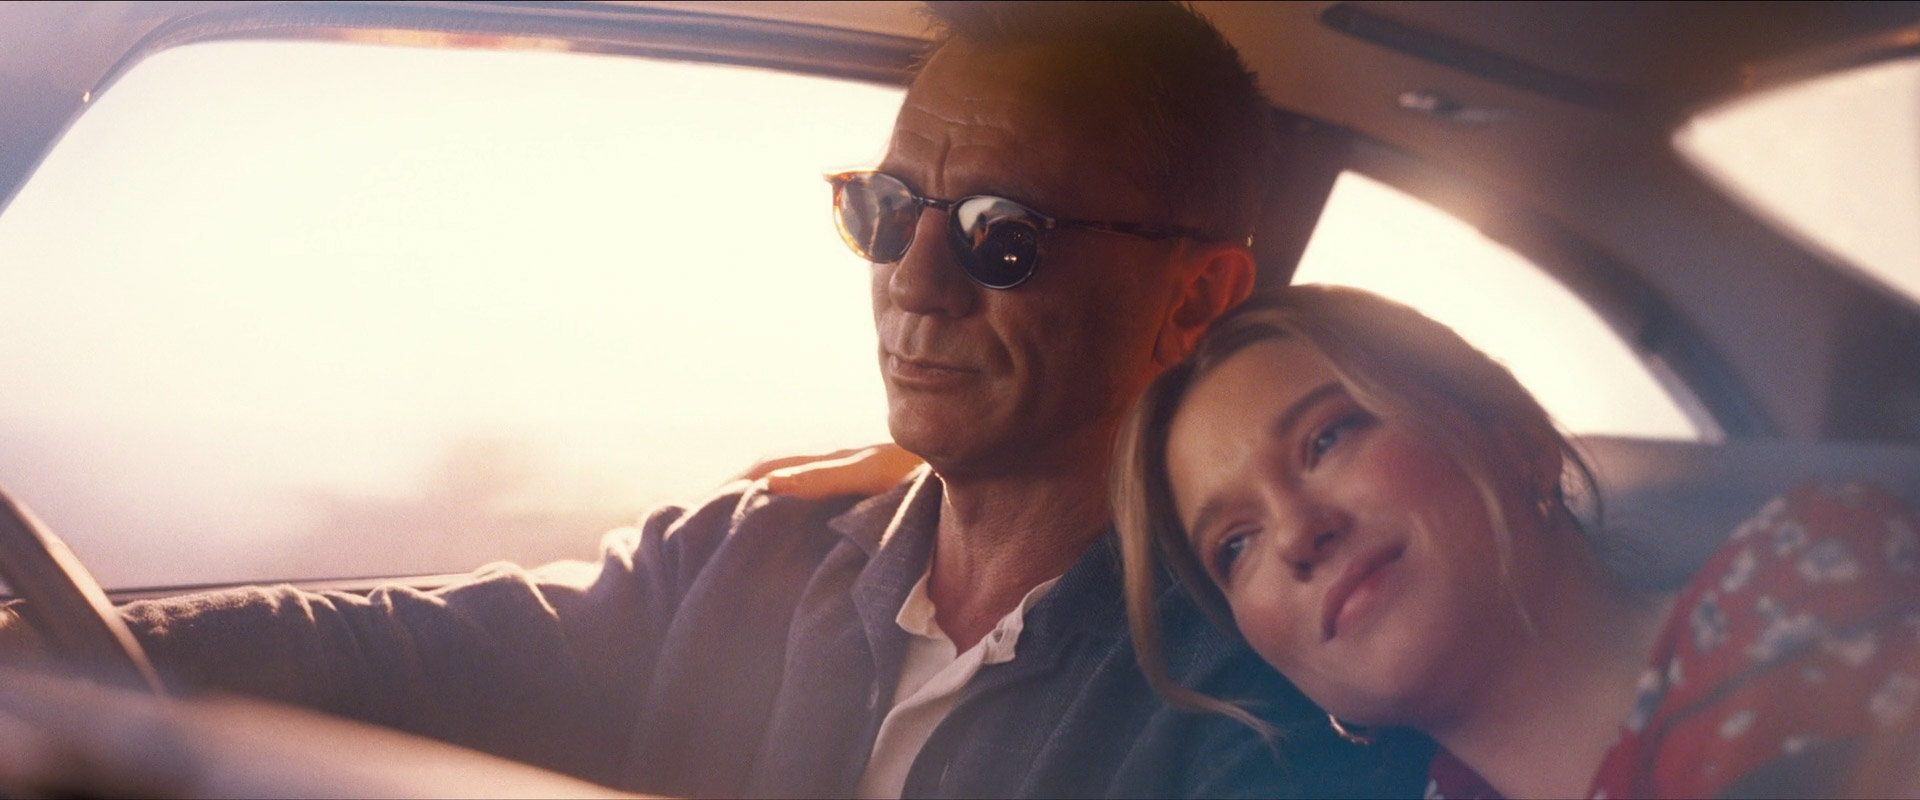 Daniel Craig, Léa Seydoux in No Time to Die